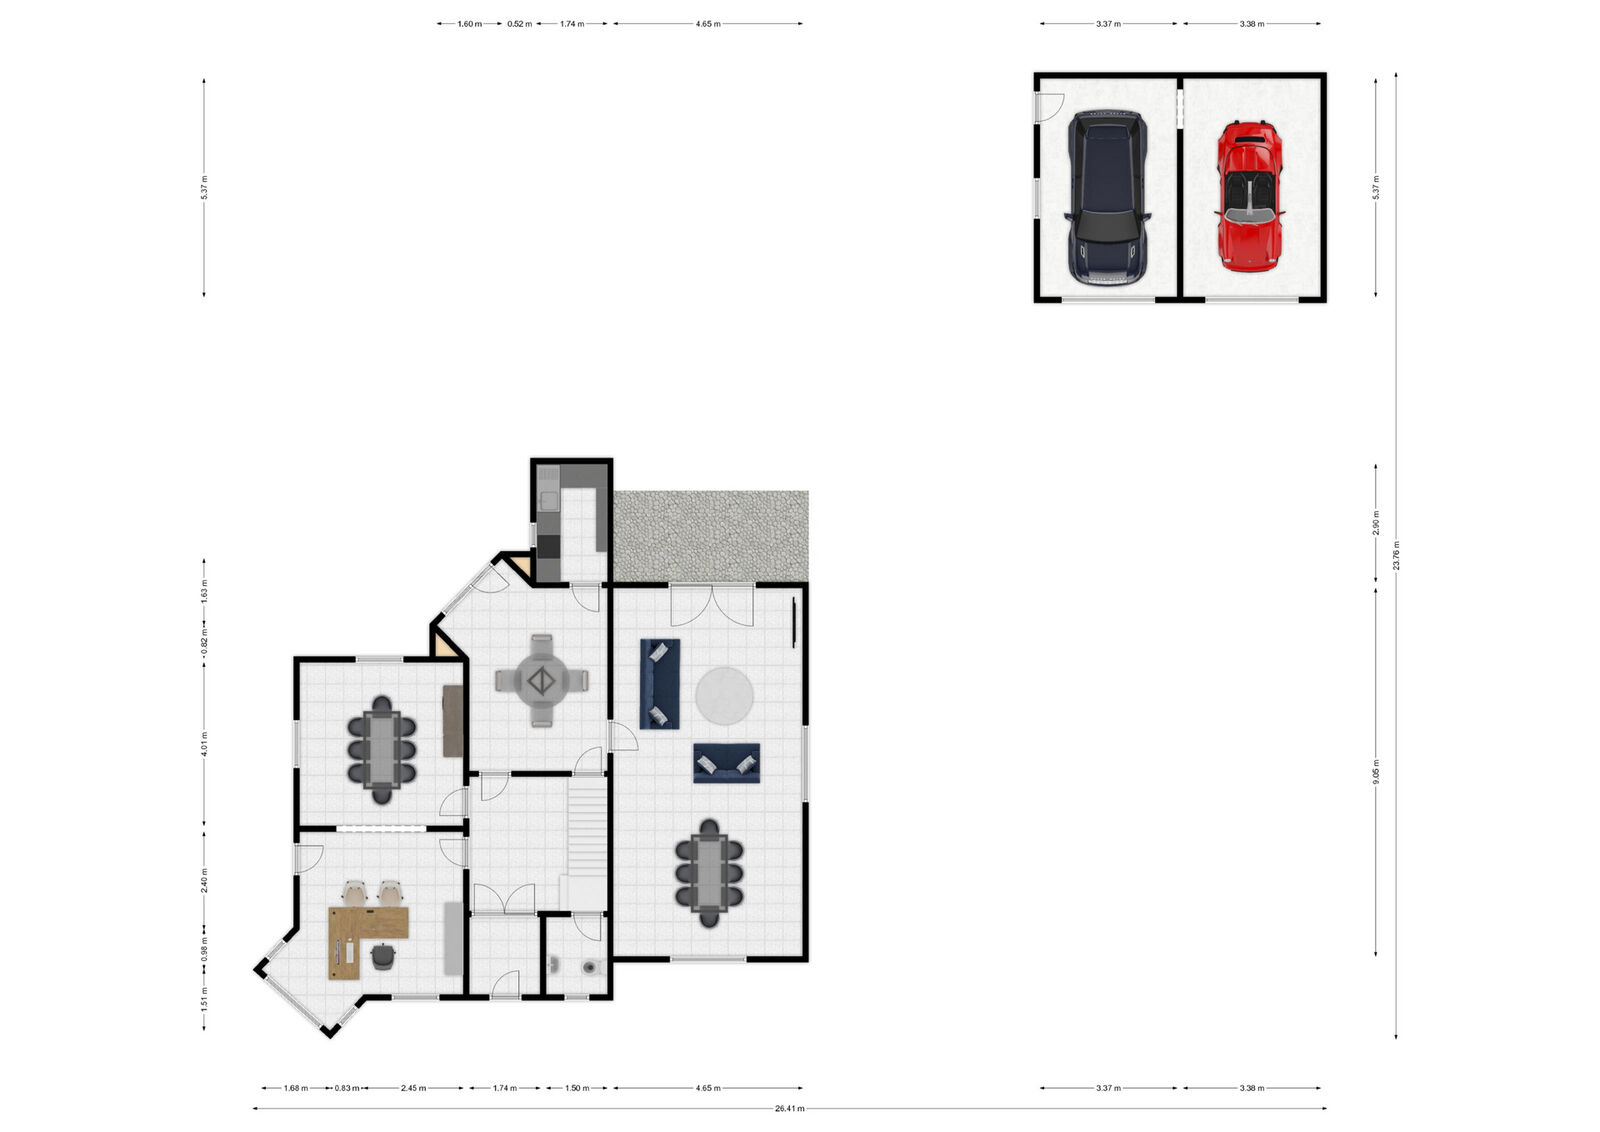 Maison 5ch avec deux garages sur 21a de terrain, proche du centre - Rez - rue adolphe gouttier 15 - couvin